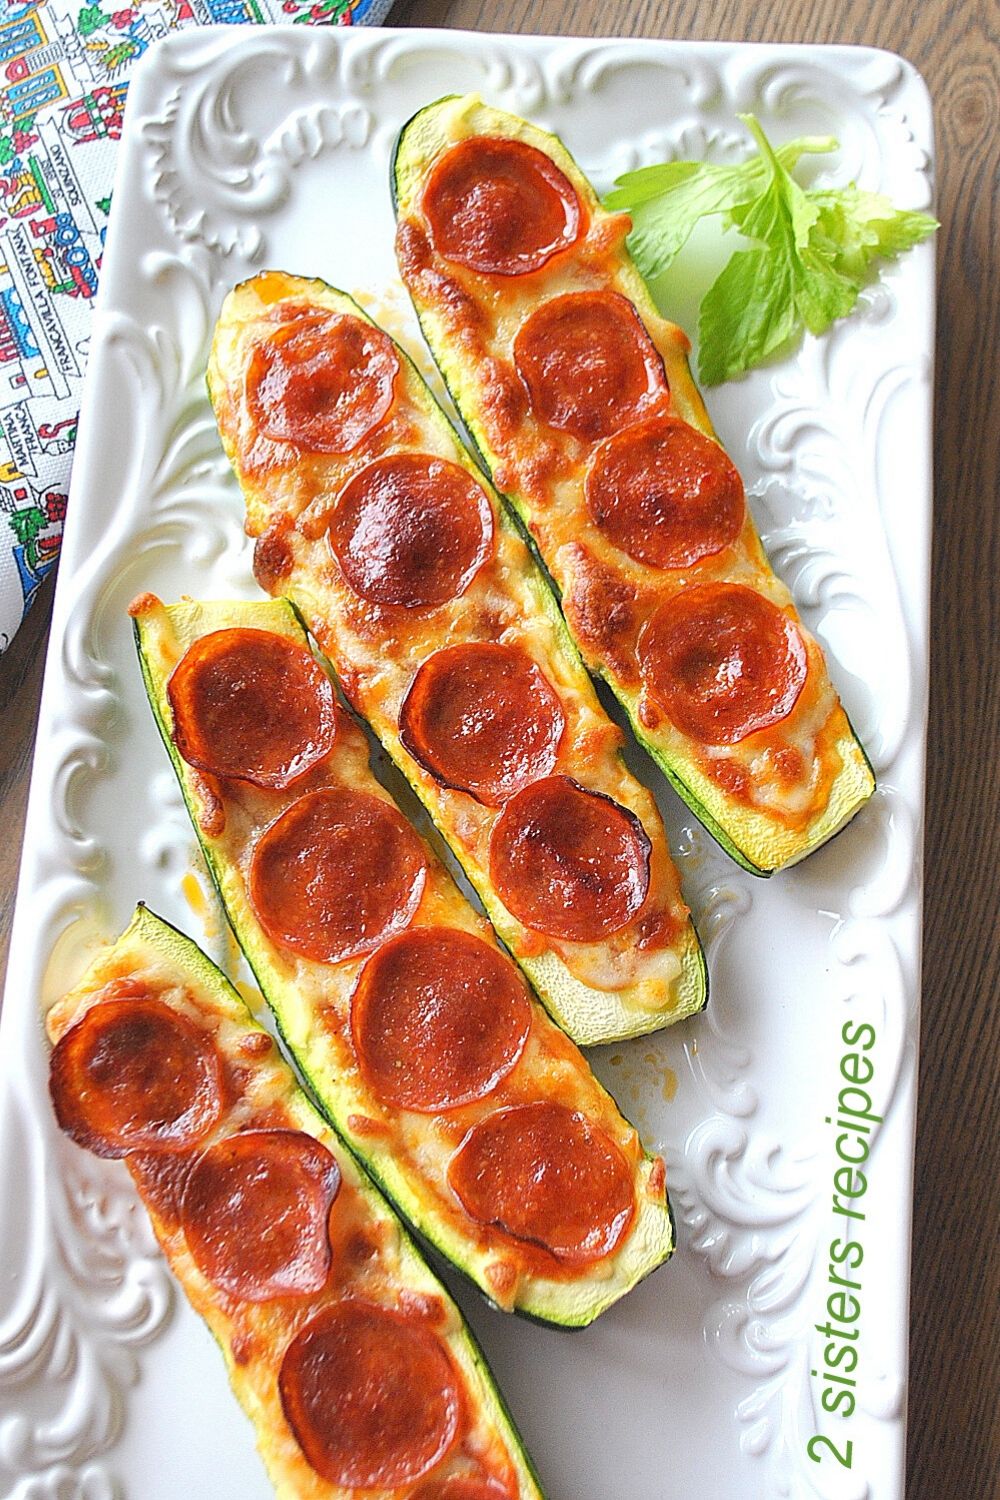 Zucchini Pepperoni Pizza Boats by 2sistersrecipes.com